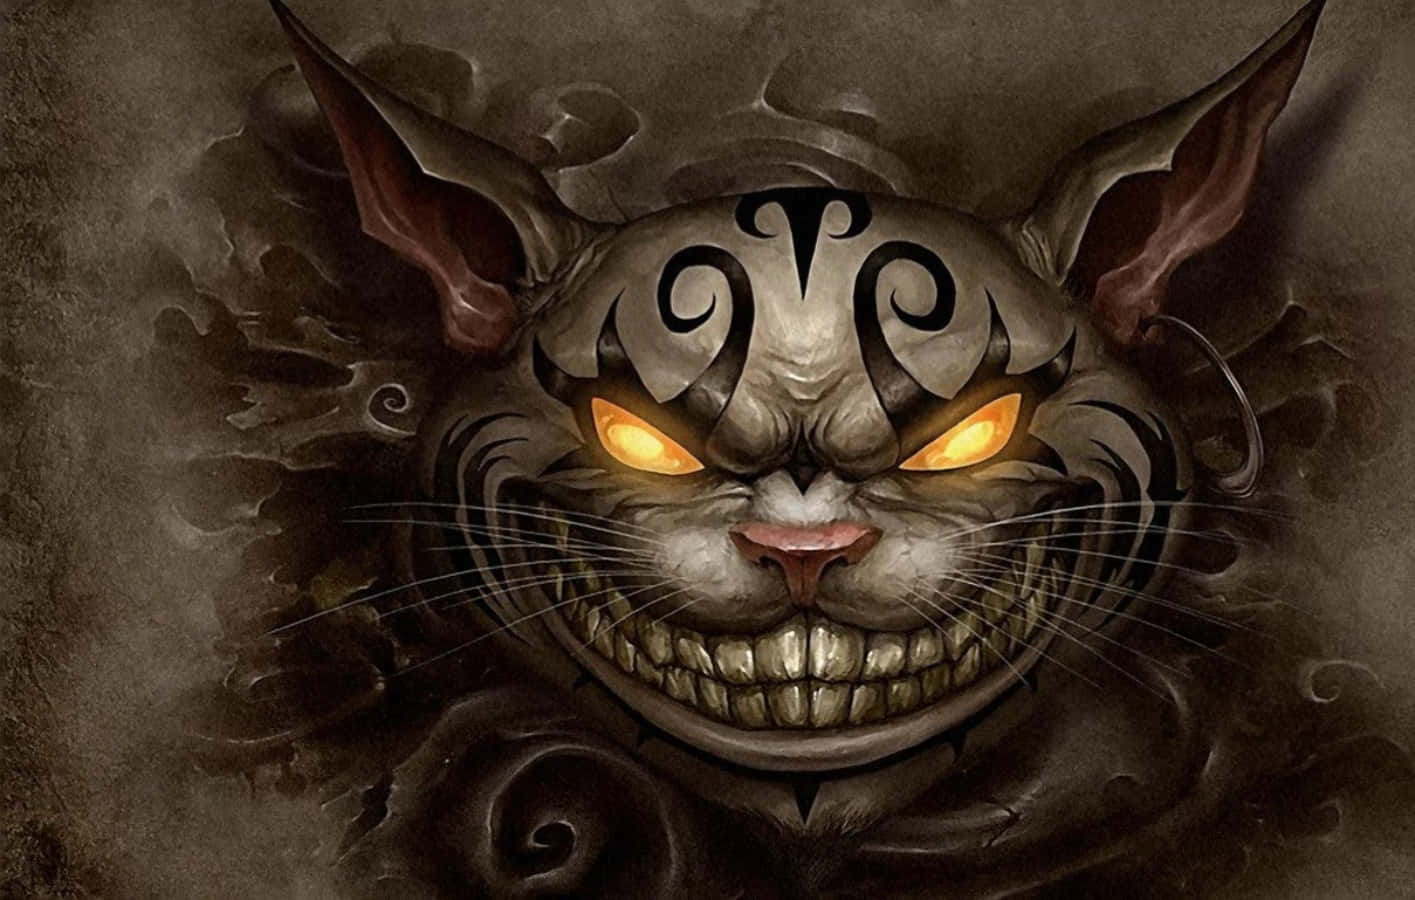 Smilendesnedigt Fylder Cheshire-katten Rummet Med Sin Drilagtige Charme.